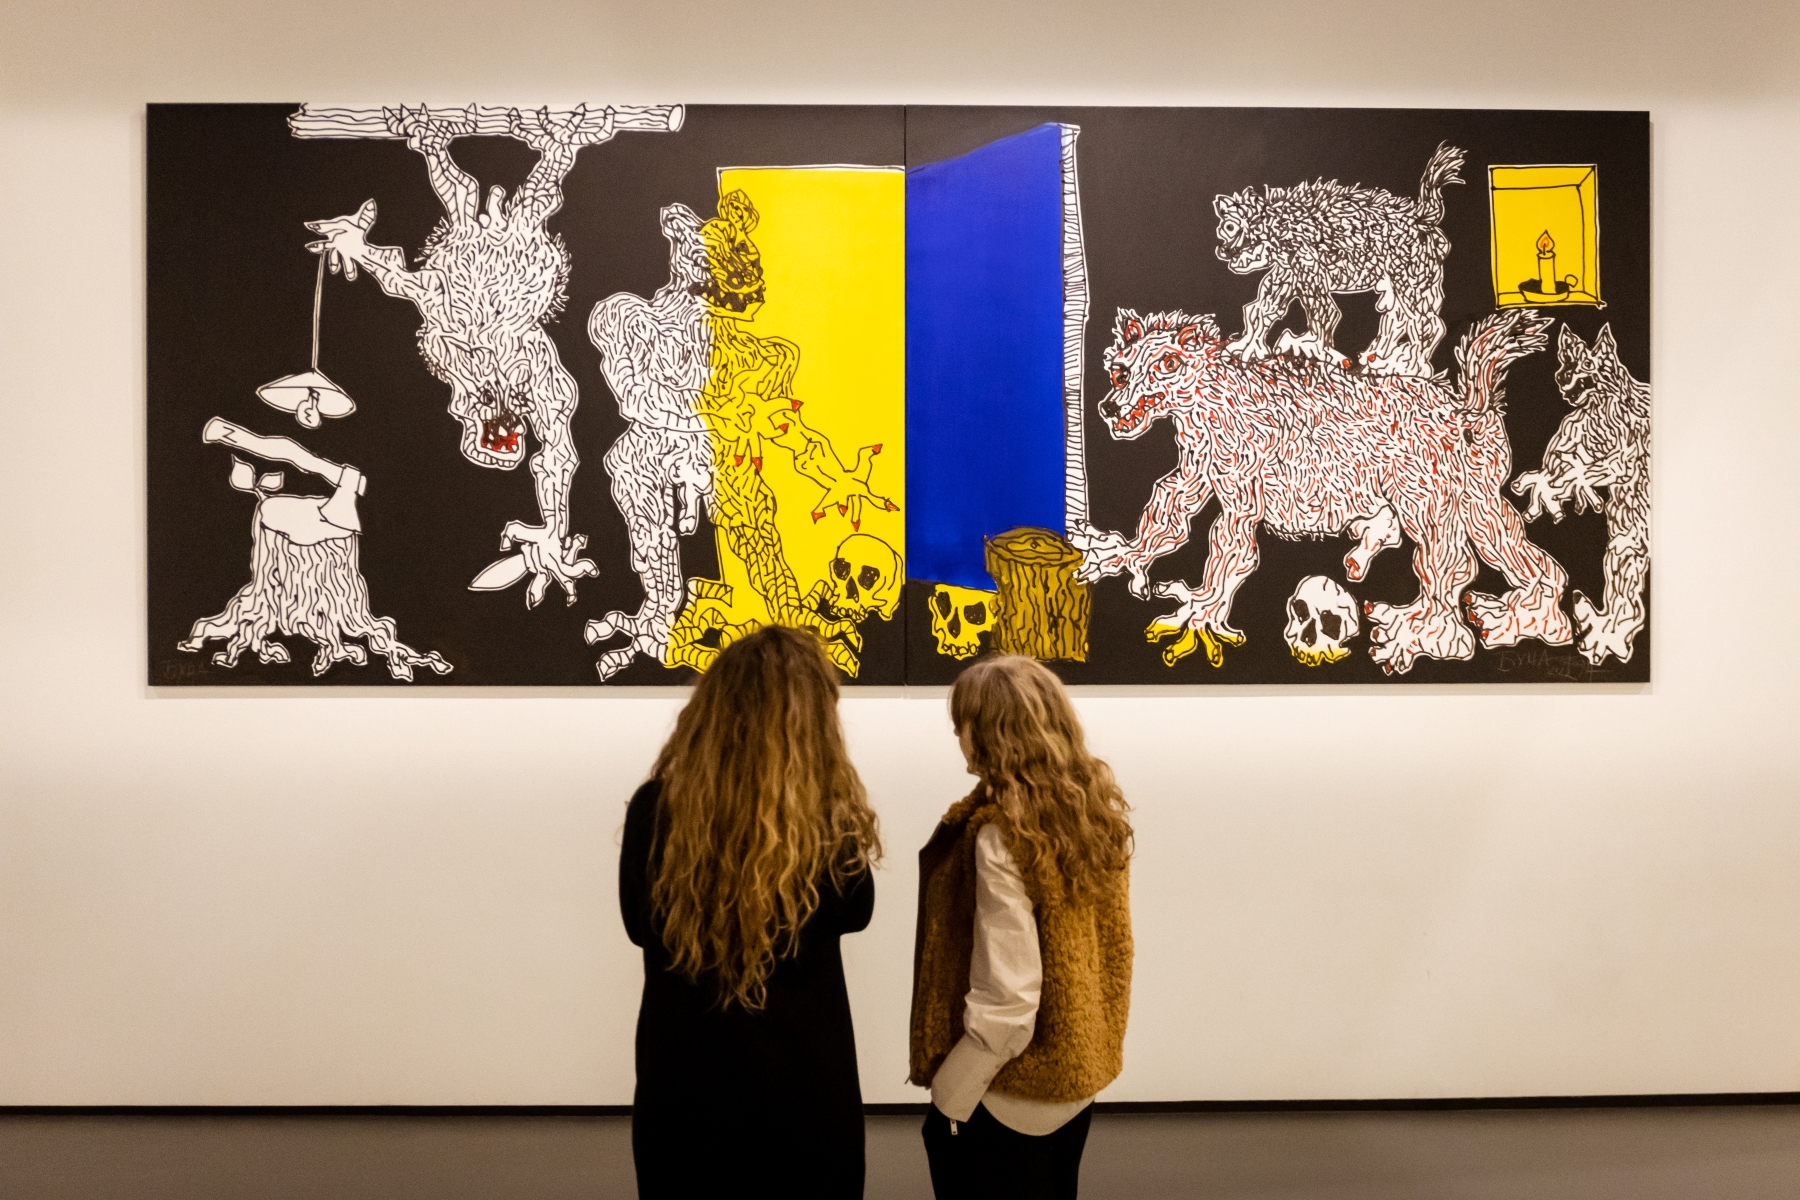 Dwie kobiety stoją przed obrazem Andrzeja Fogtta z serii "Bucza" prezentowanym w Muzeum POLIN.